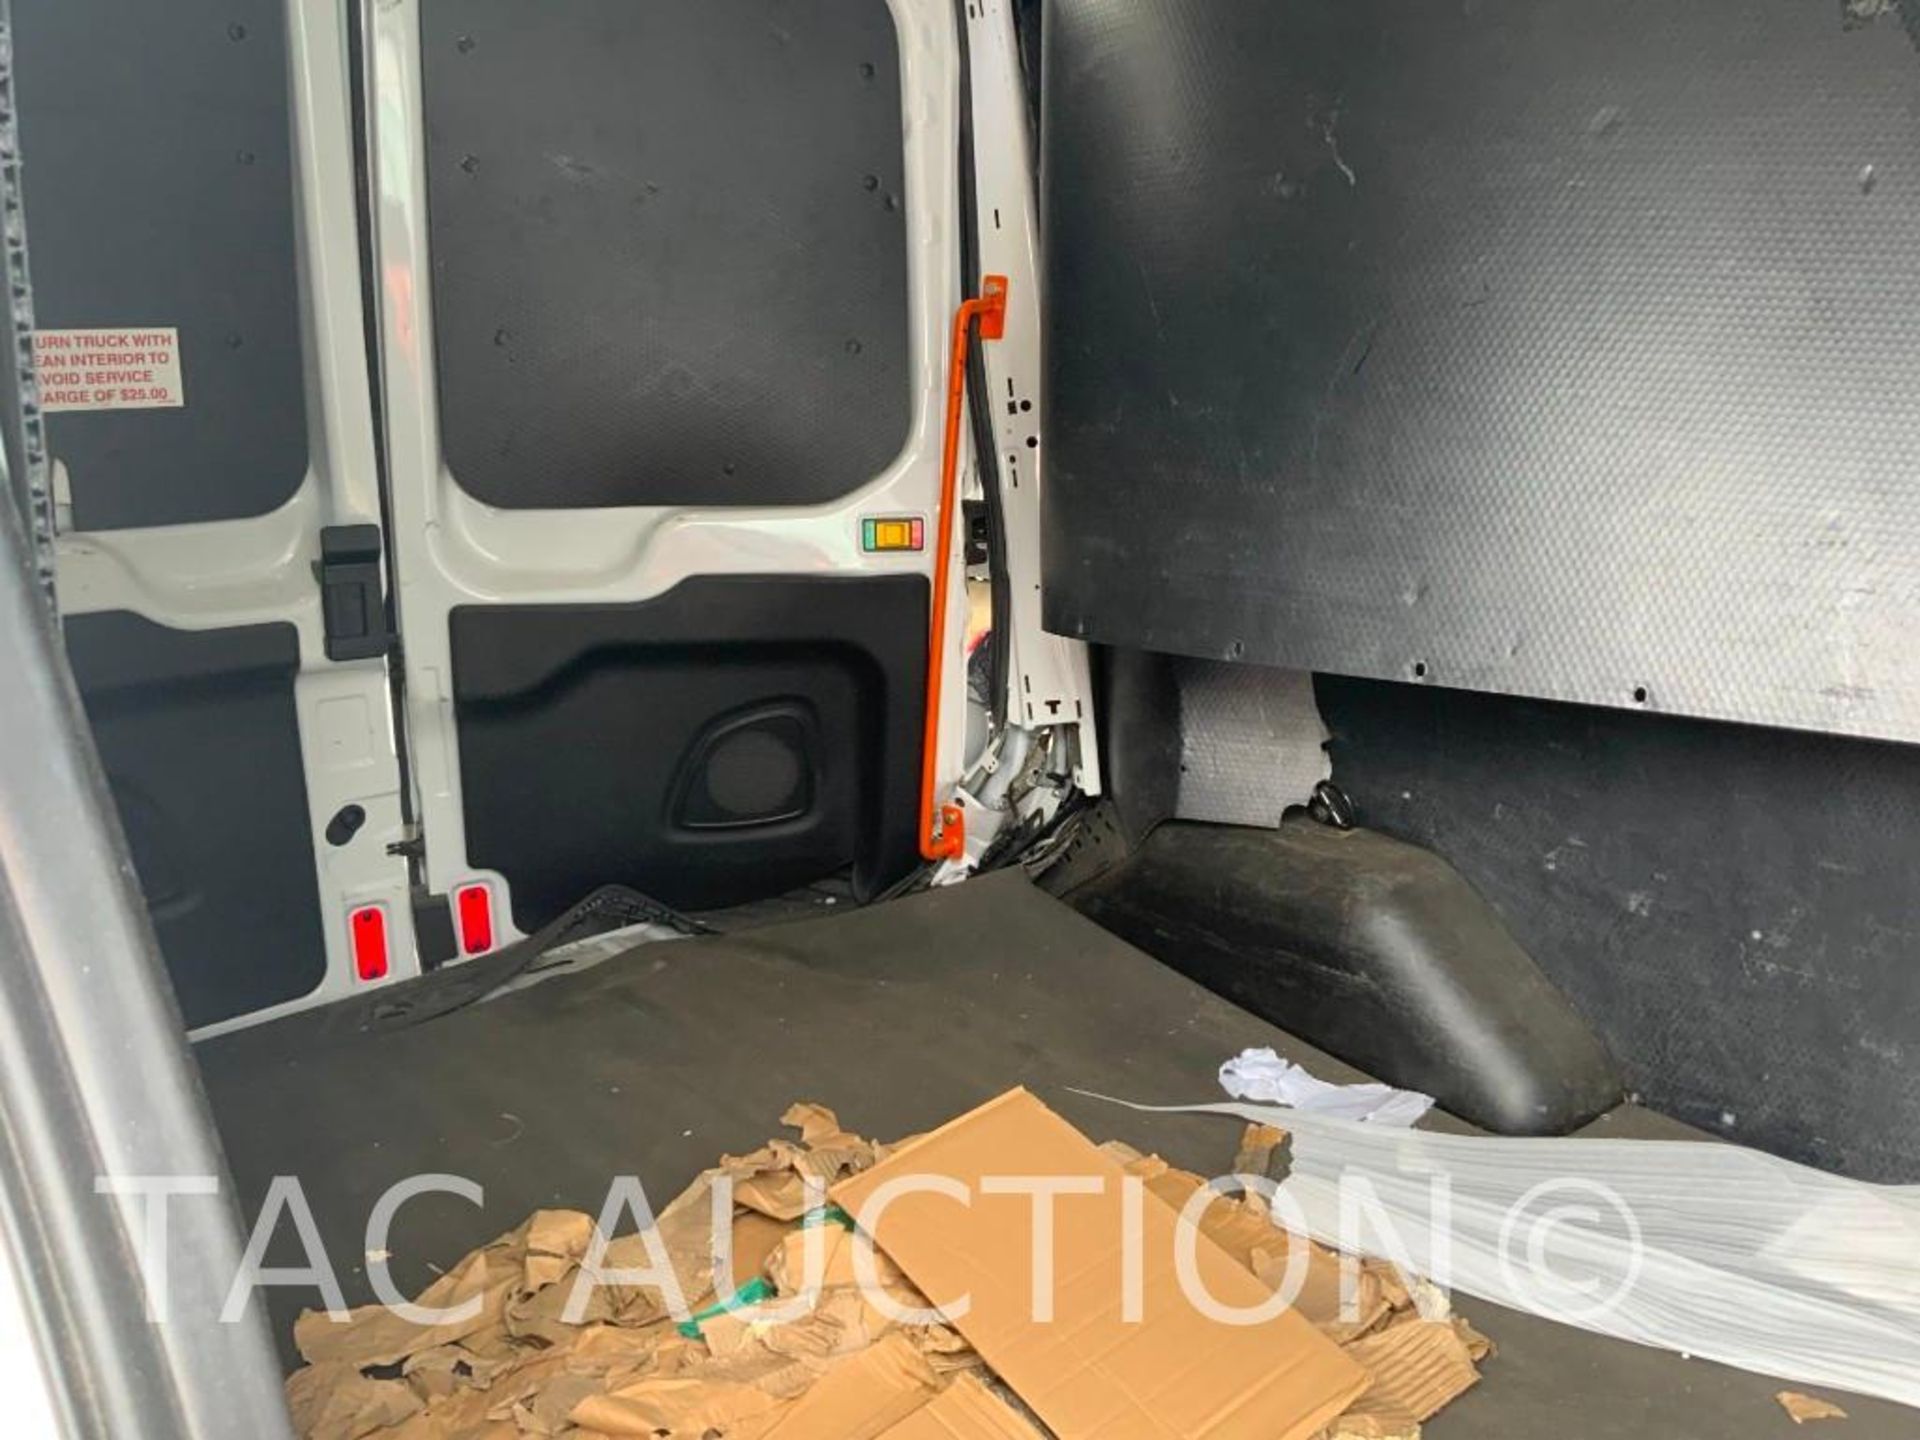 2019 Ford T150 Transit Van - Image 29 of 42